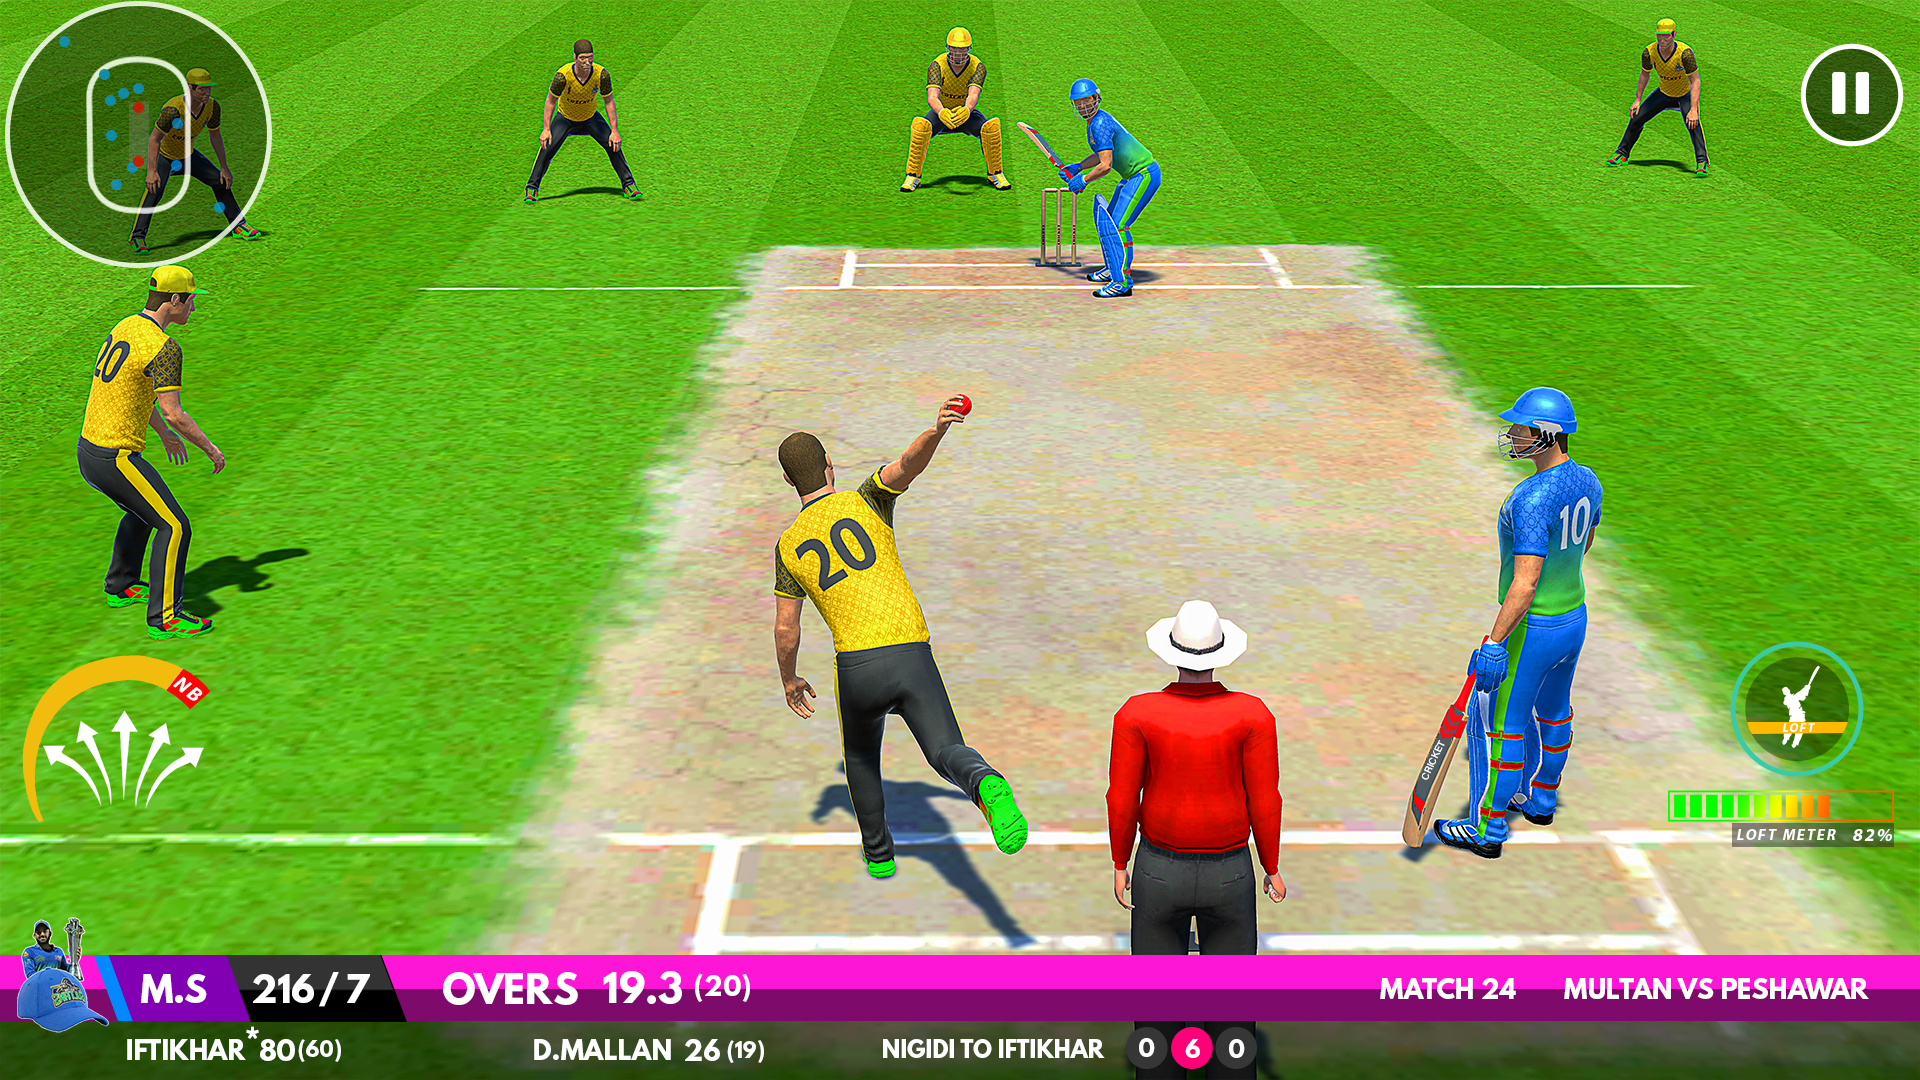 Screenshot 1 of Jeu de cricket 3D 1.0